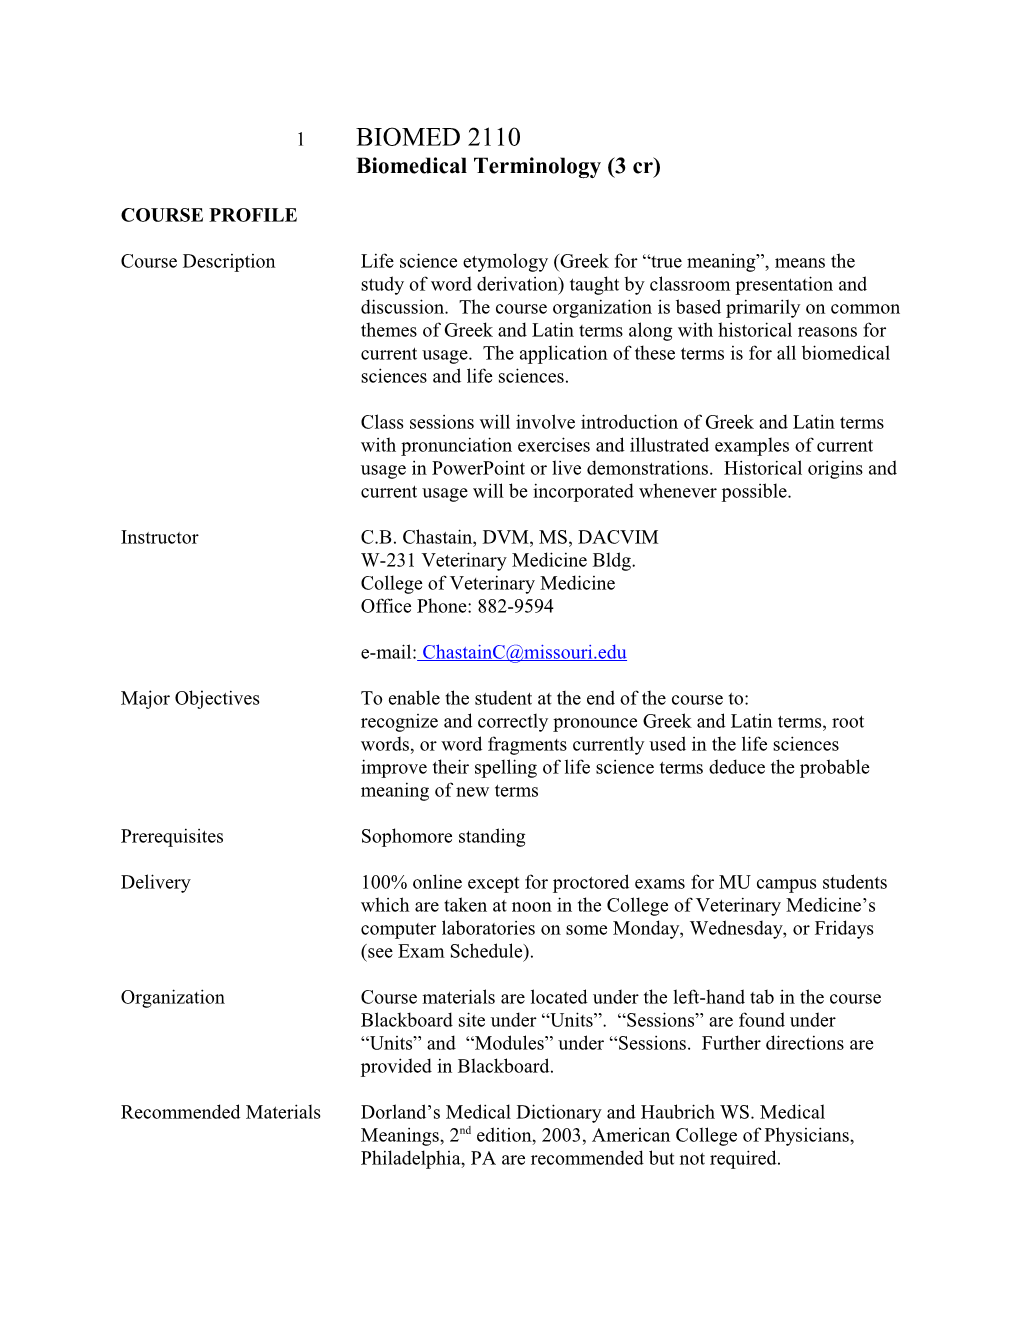 BIOMED 2110 Biomedical Terminology (3 Cr)